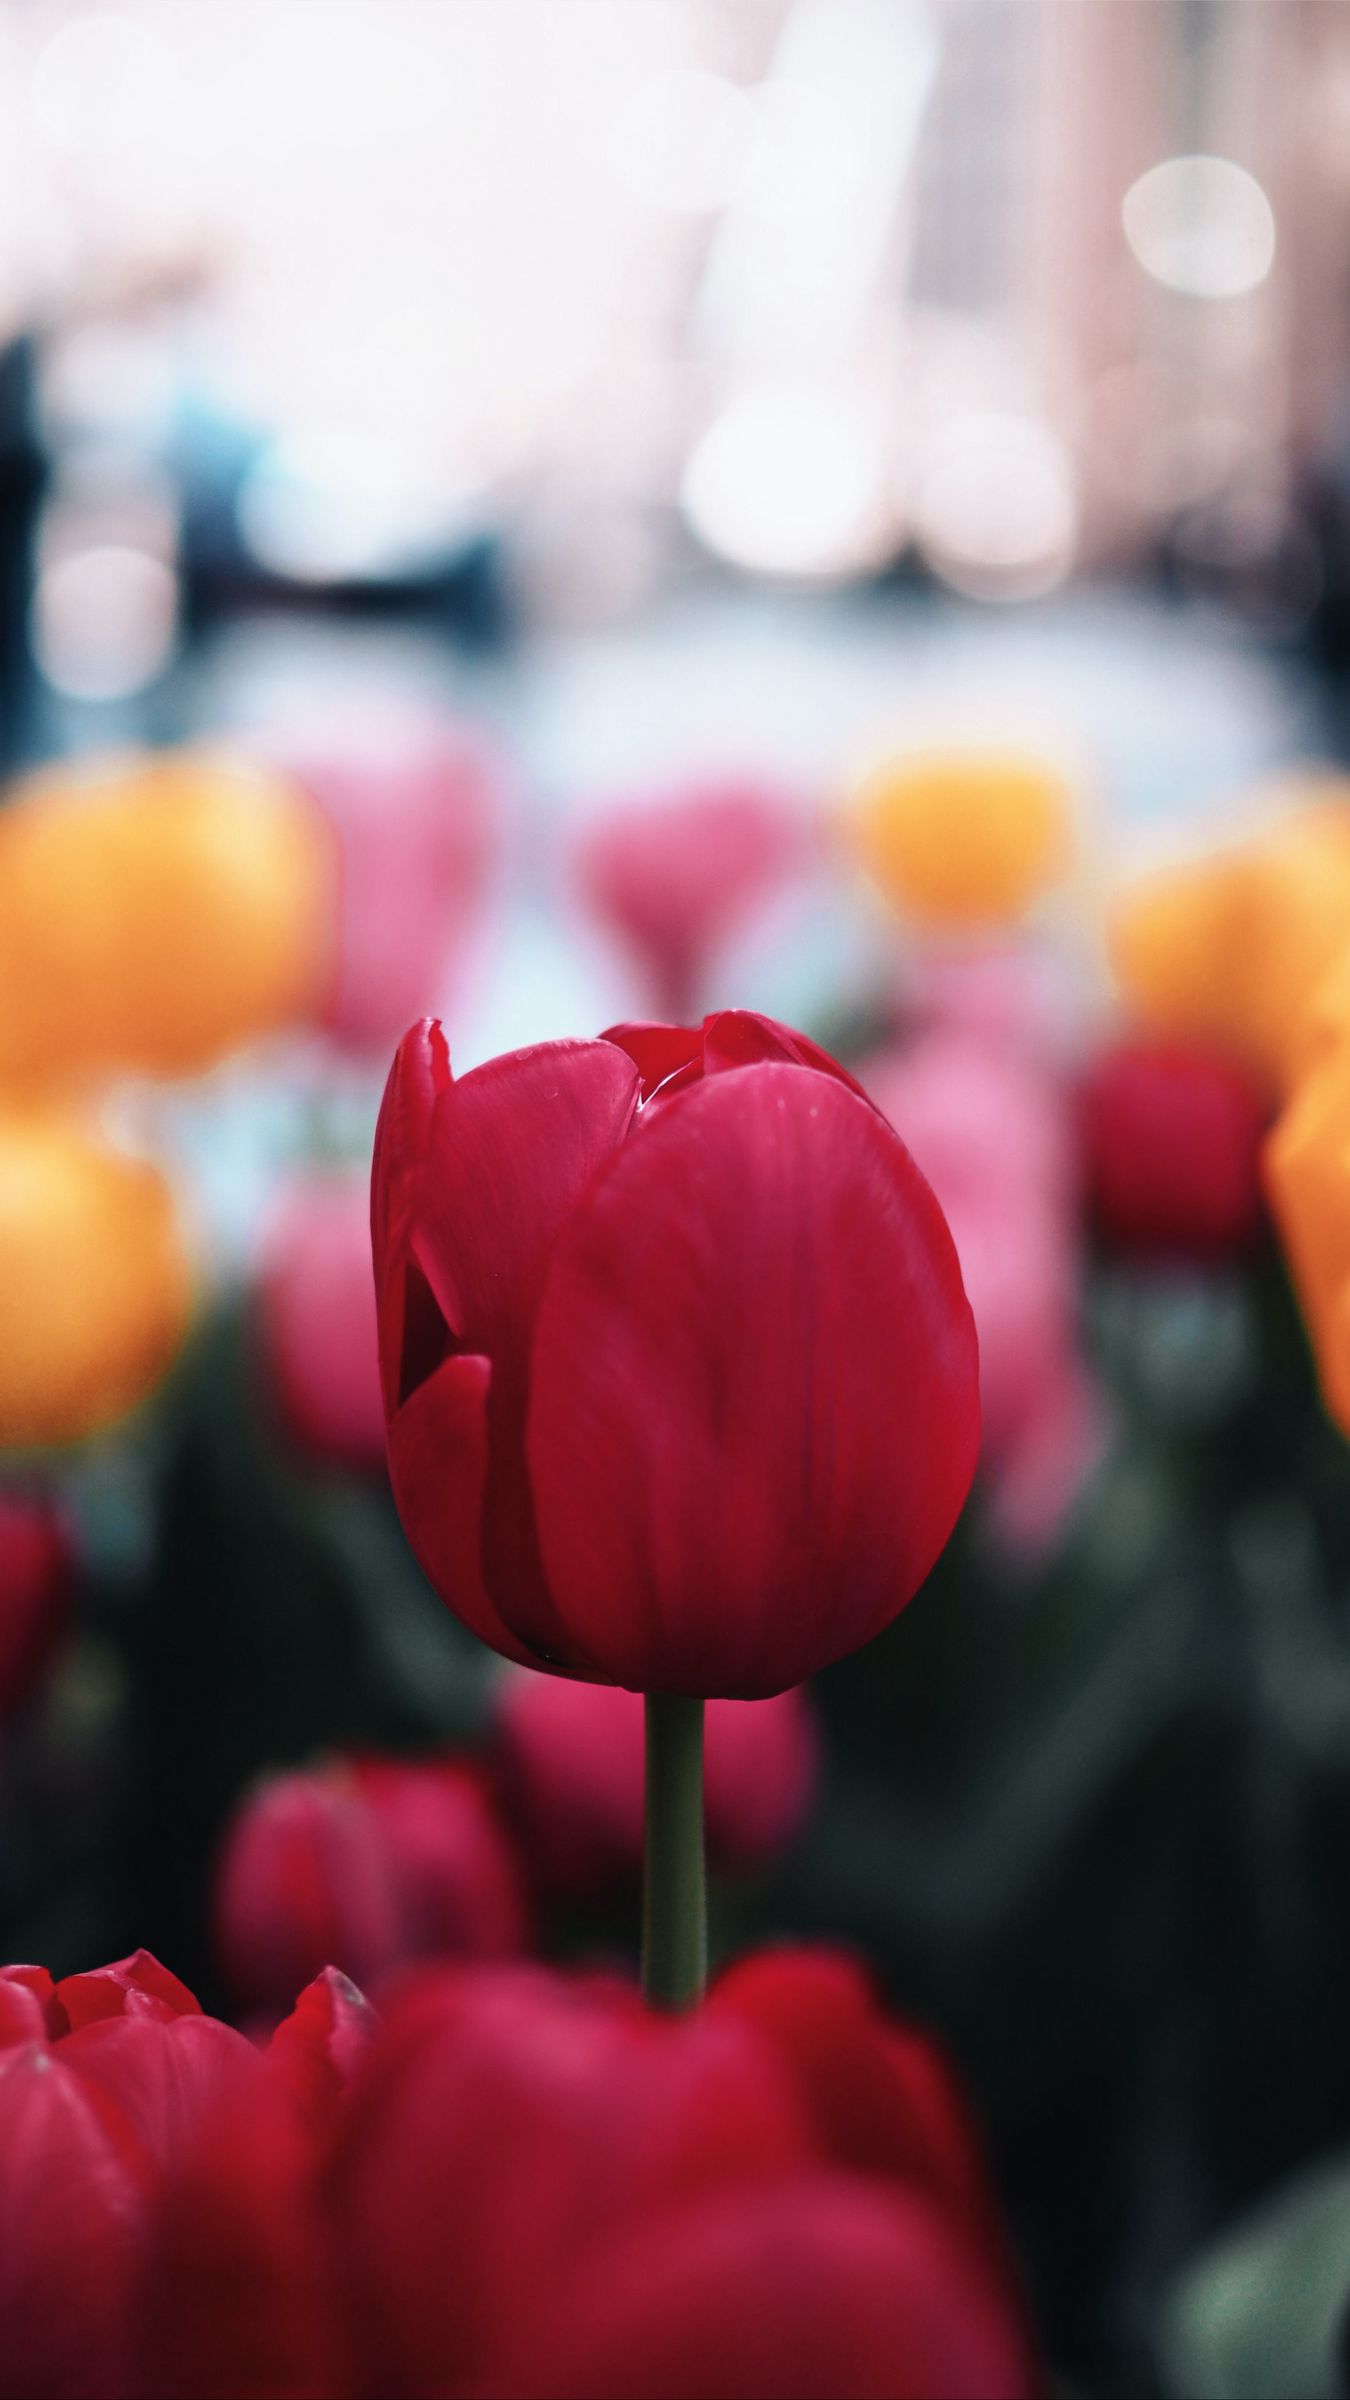 Để hình nền của bạn trở nên sống động và cuốn hút, hãy chọn hình nền tulip. Với vẻ đẹp nhẹ nhàng và thanh thoát của những bông hoa tulip, hình nền này sẽ làm cho màn hình của bạn trở nên rực rỡ và đầy sáng tạo!